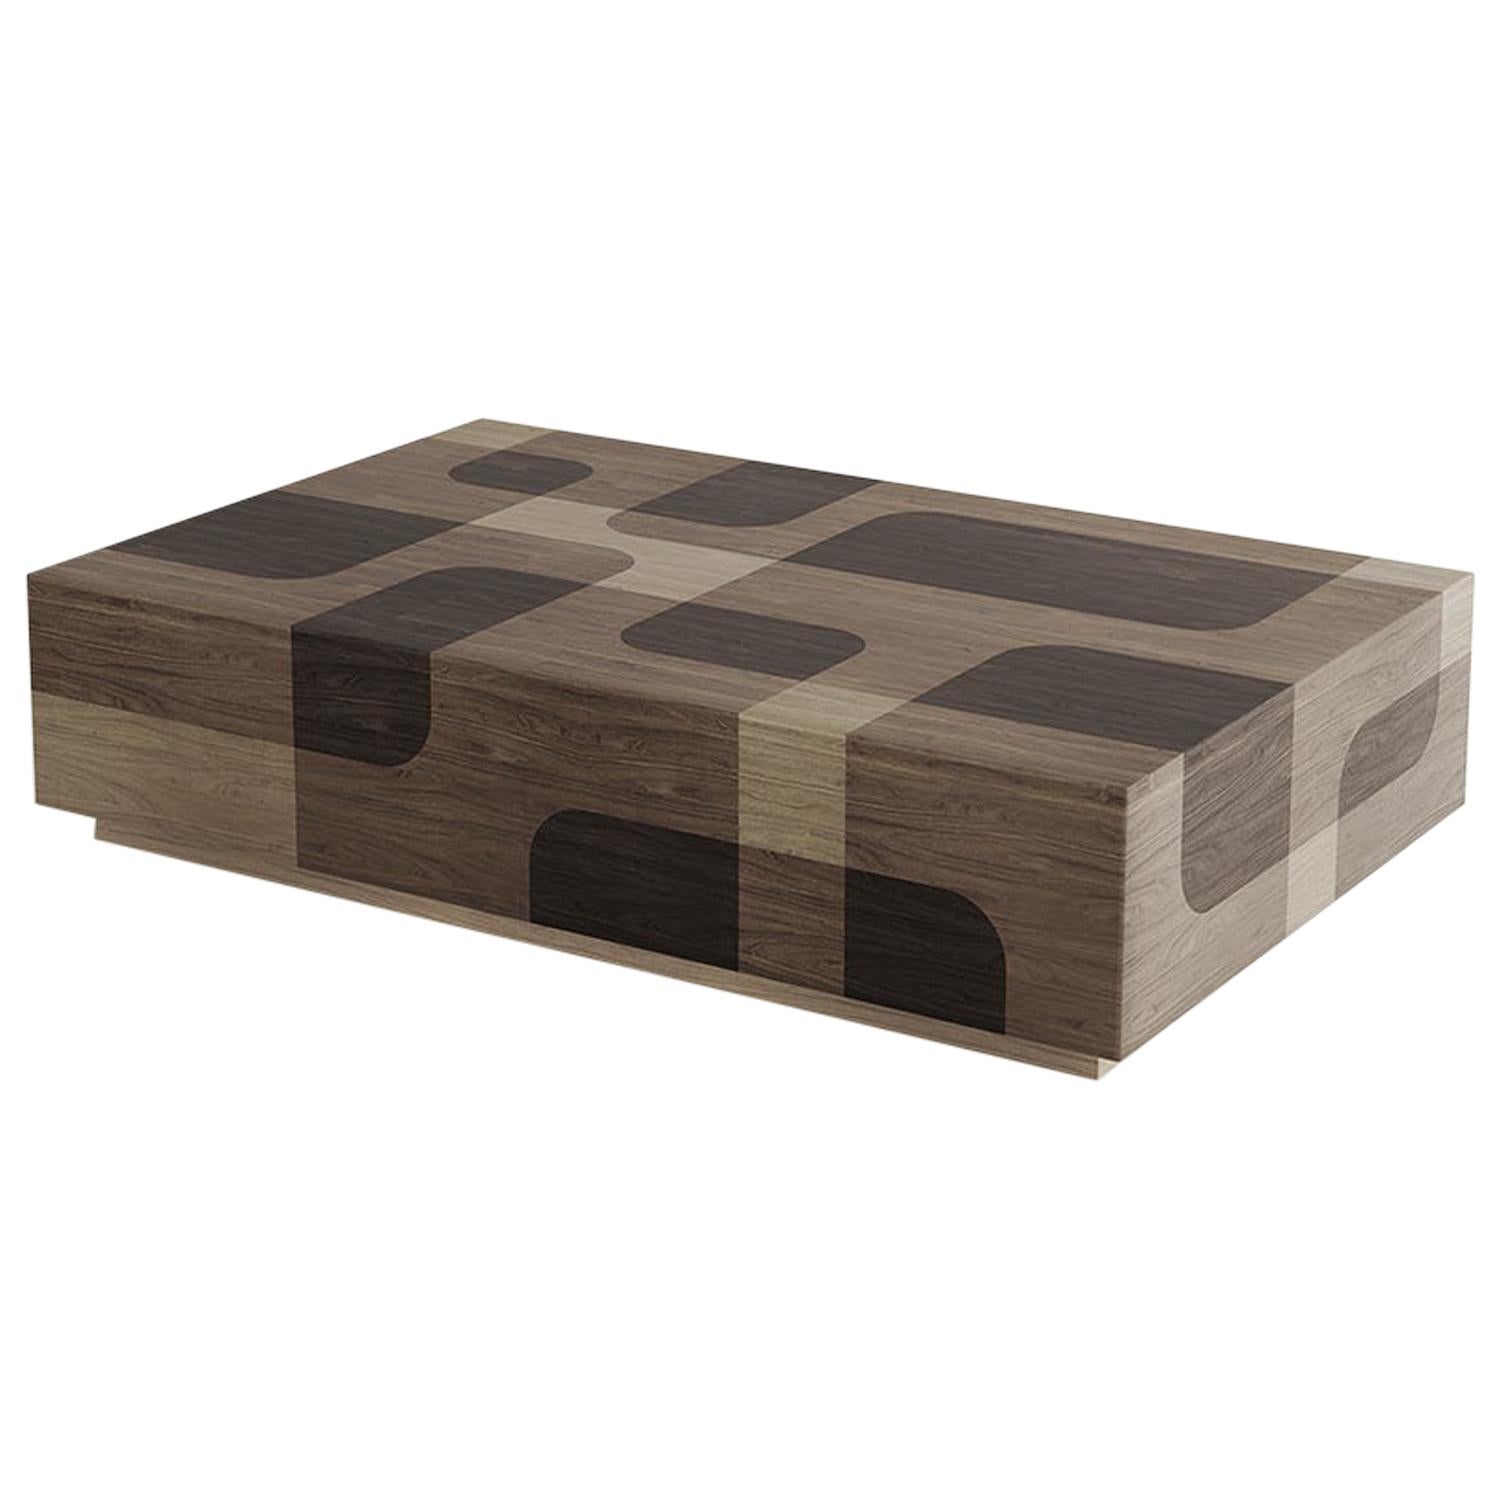 La profondeur d'un objet va au-delà de ses dimensions.
La table basse rectangulaire en bois patiné Nature est un meuble qui, par son matériau et sa finition, simule la sensation tridimensionnelle générée par le survol d'une surface par une autre. Là